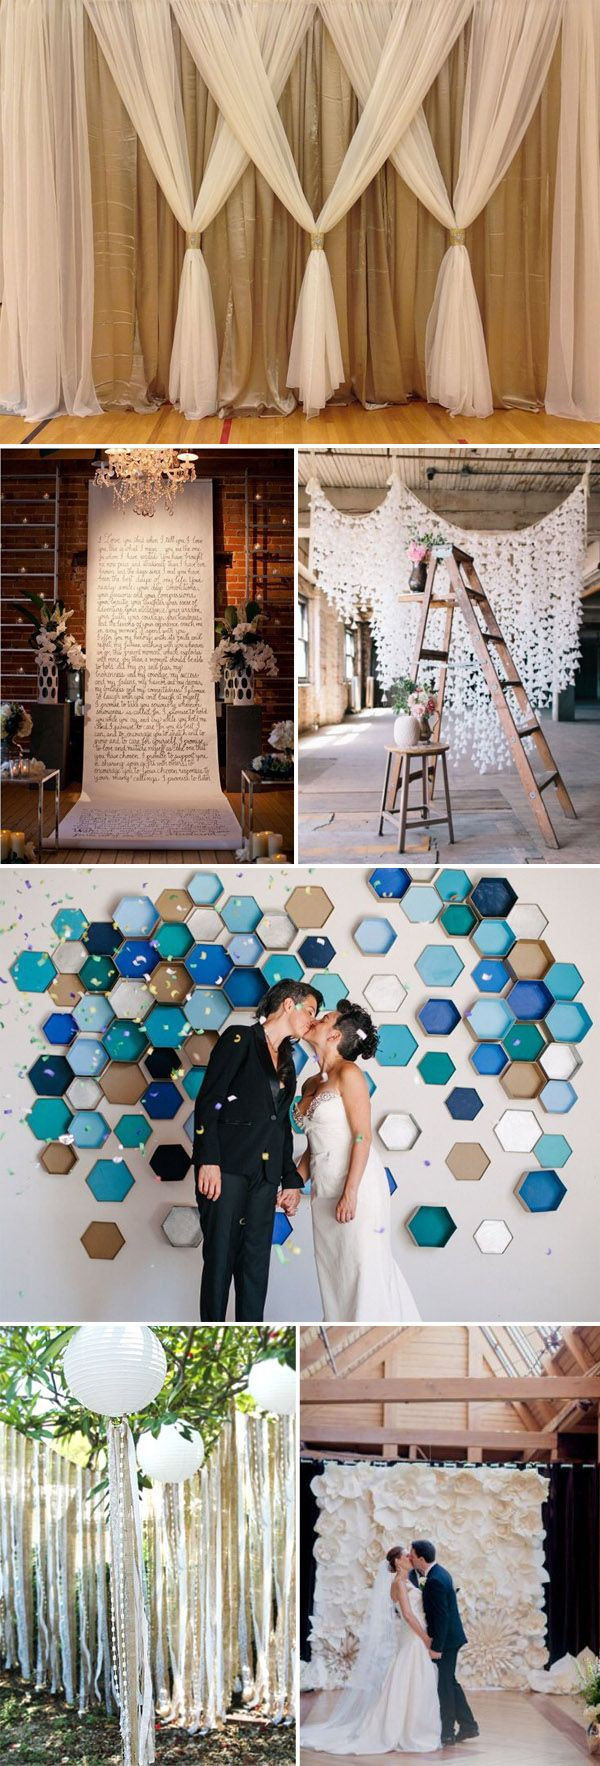 DIY Wedding Photo Backdrop
 Best 25 Diy wedding backdrop ideas on Pinterest